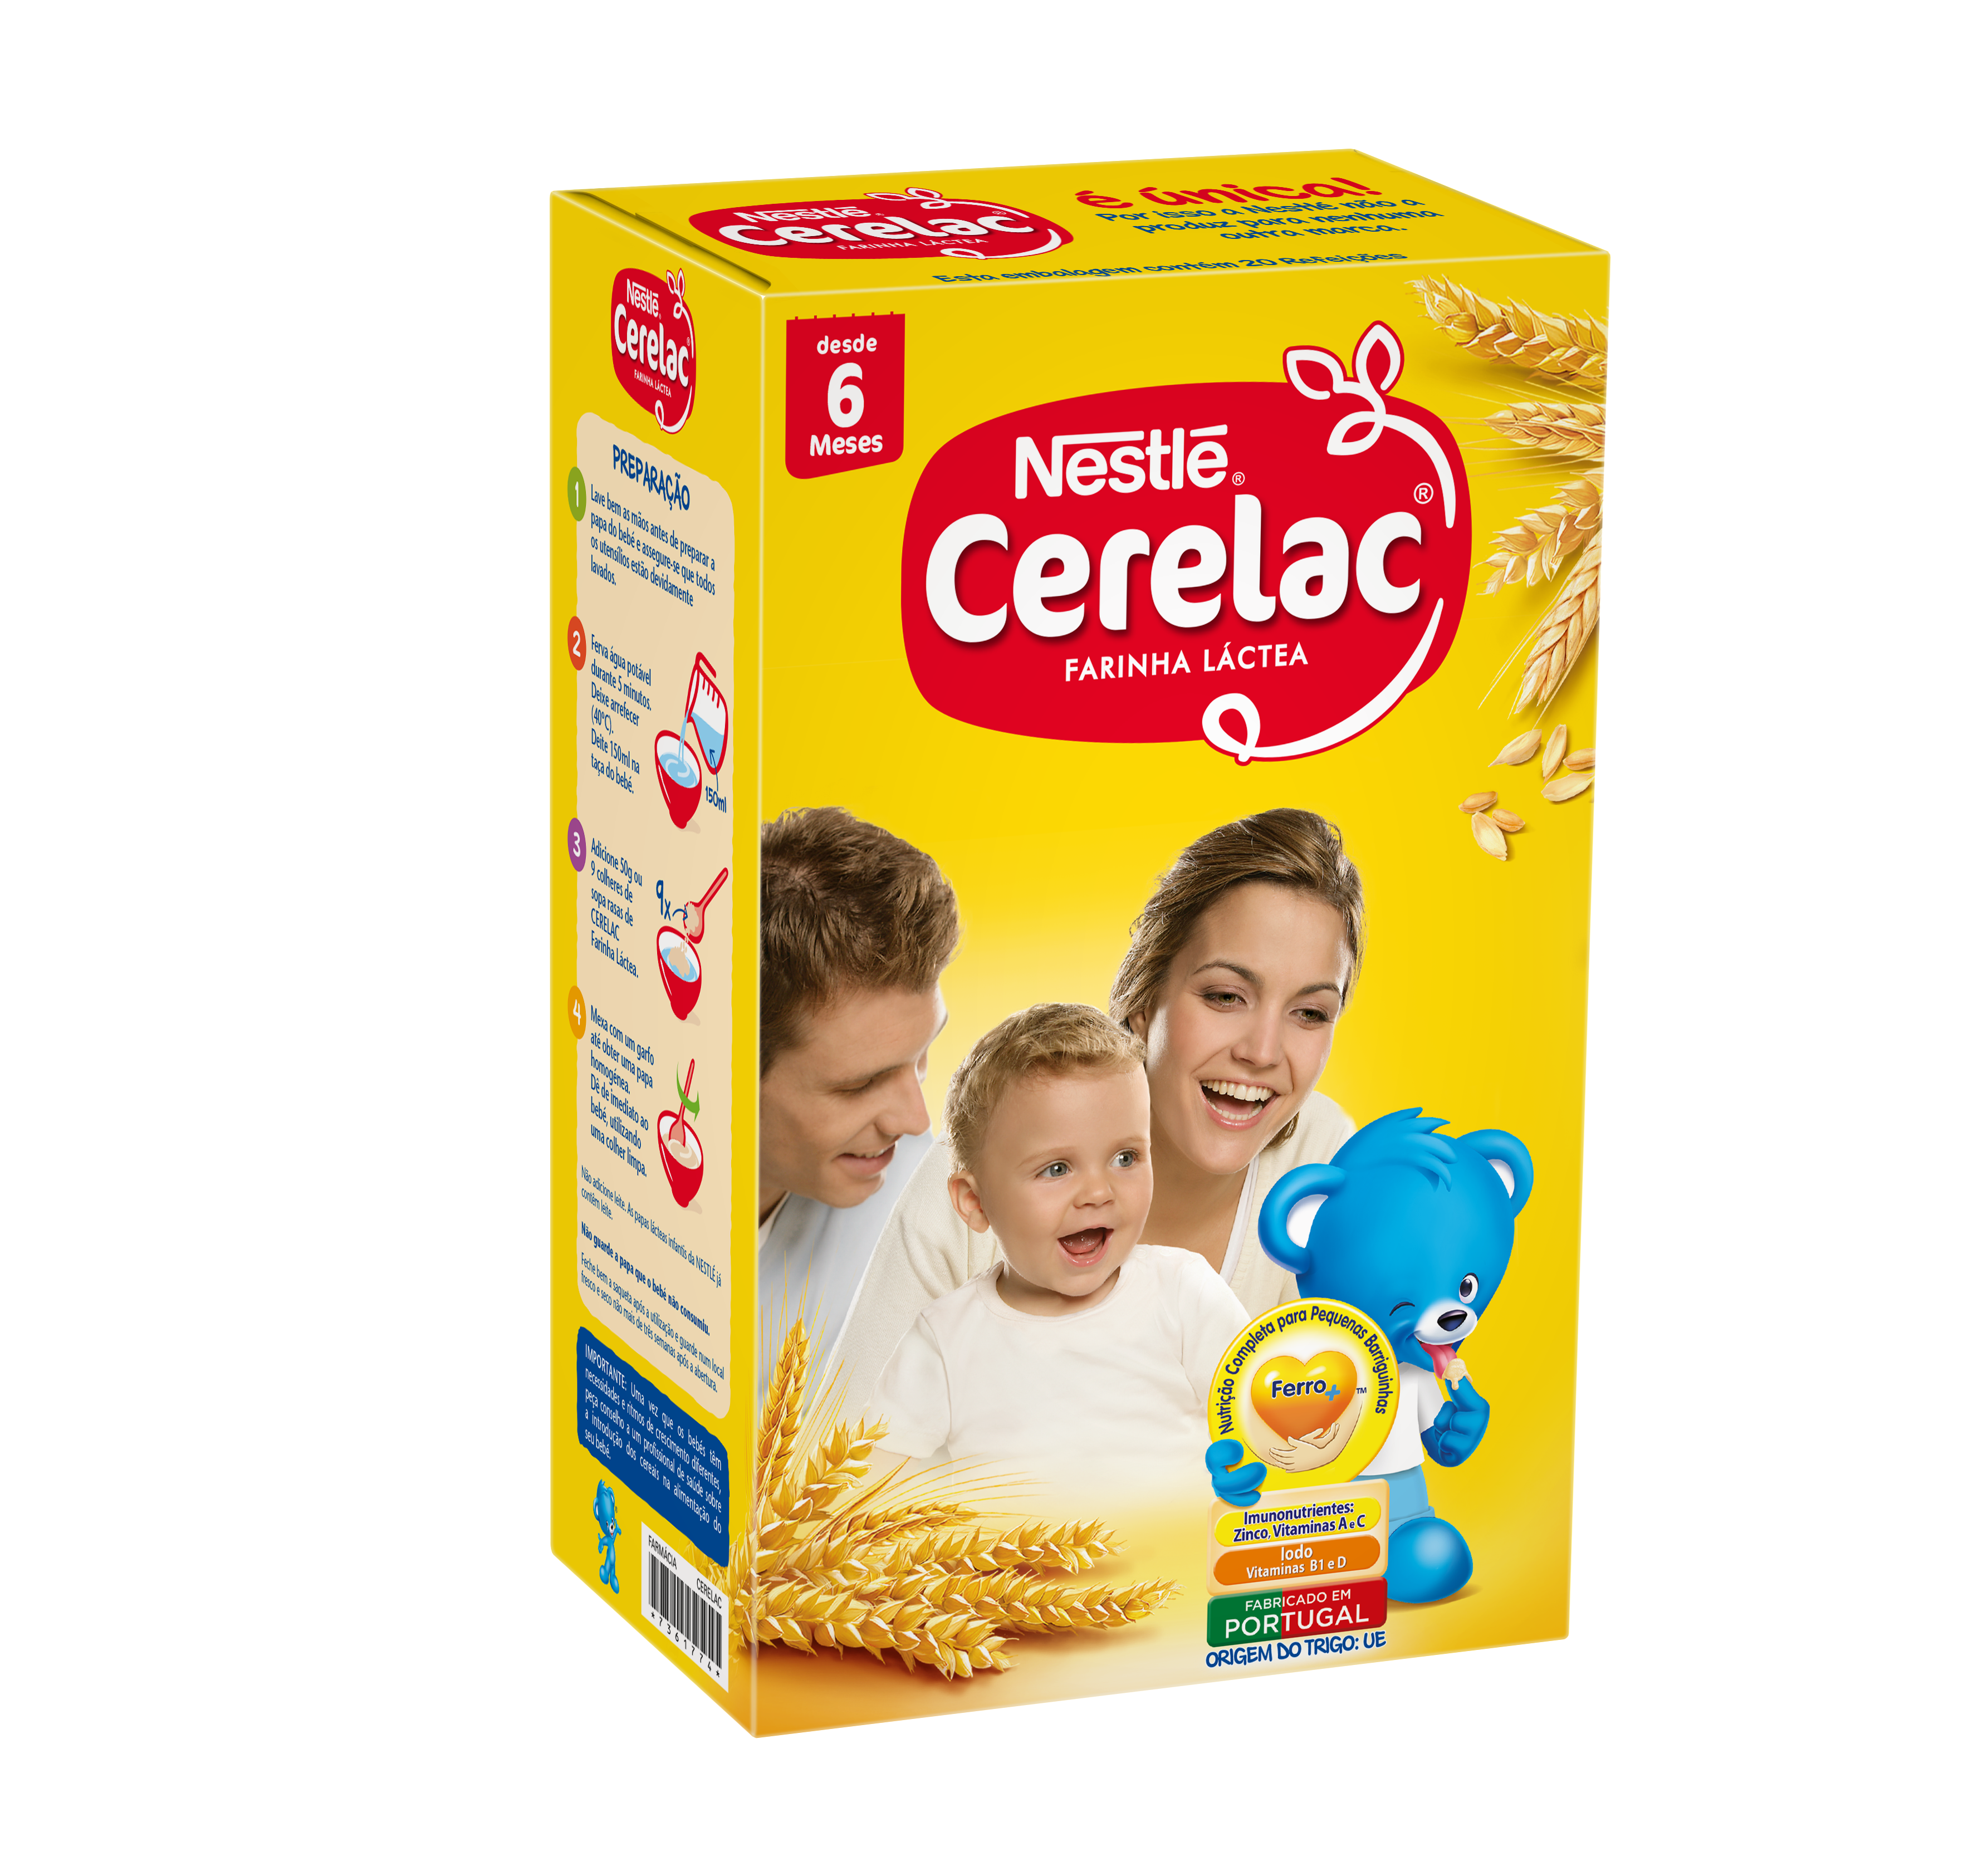 Nestlé Cerelac Farinha Láctea 6M+ 900g 